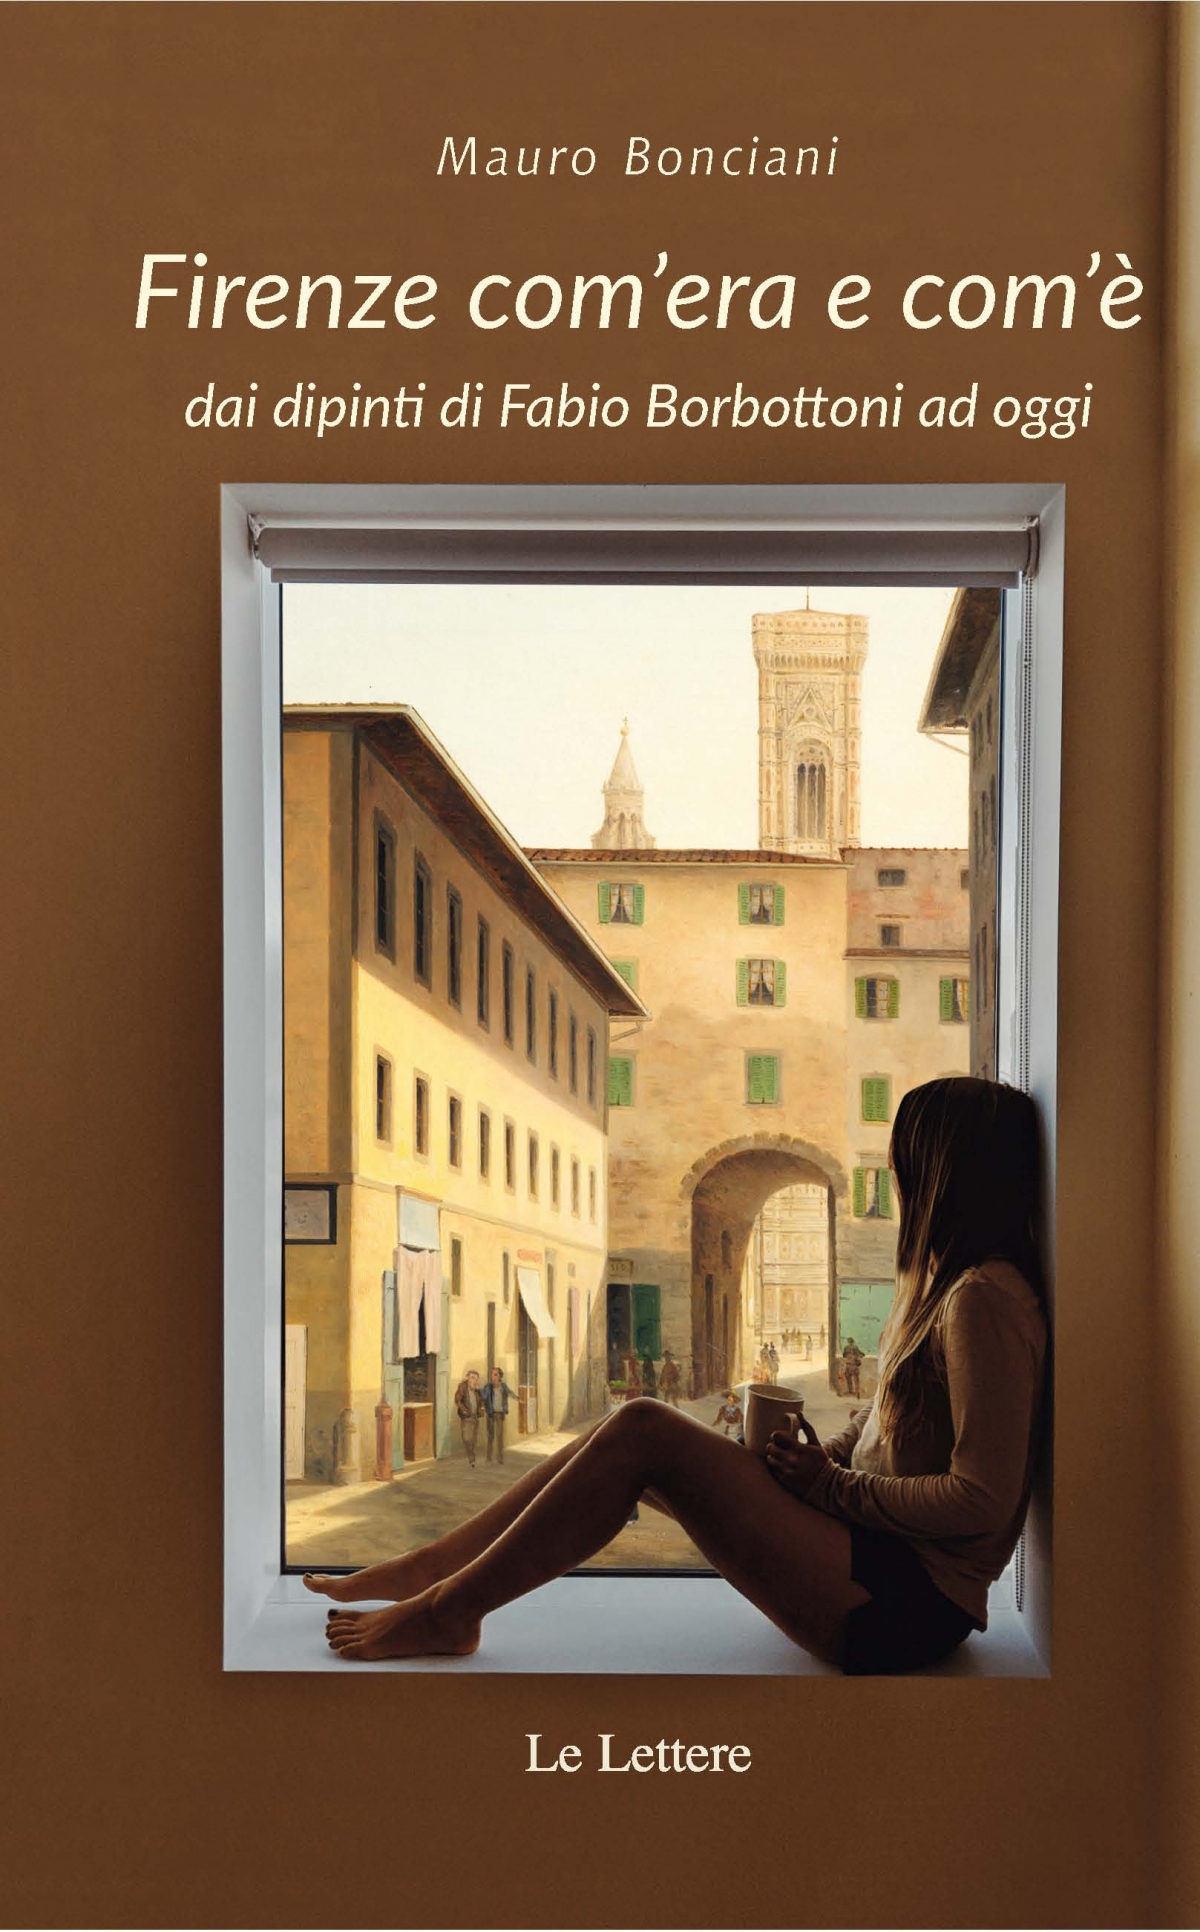 Firenze com’era e com’è dai dipinti di Fabio Borbottoni ad oggi